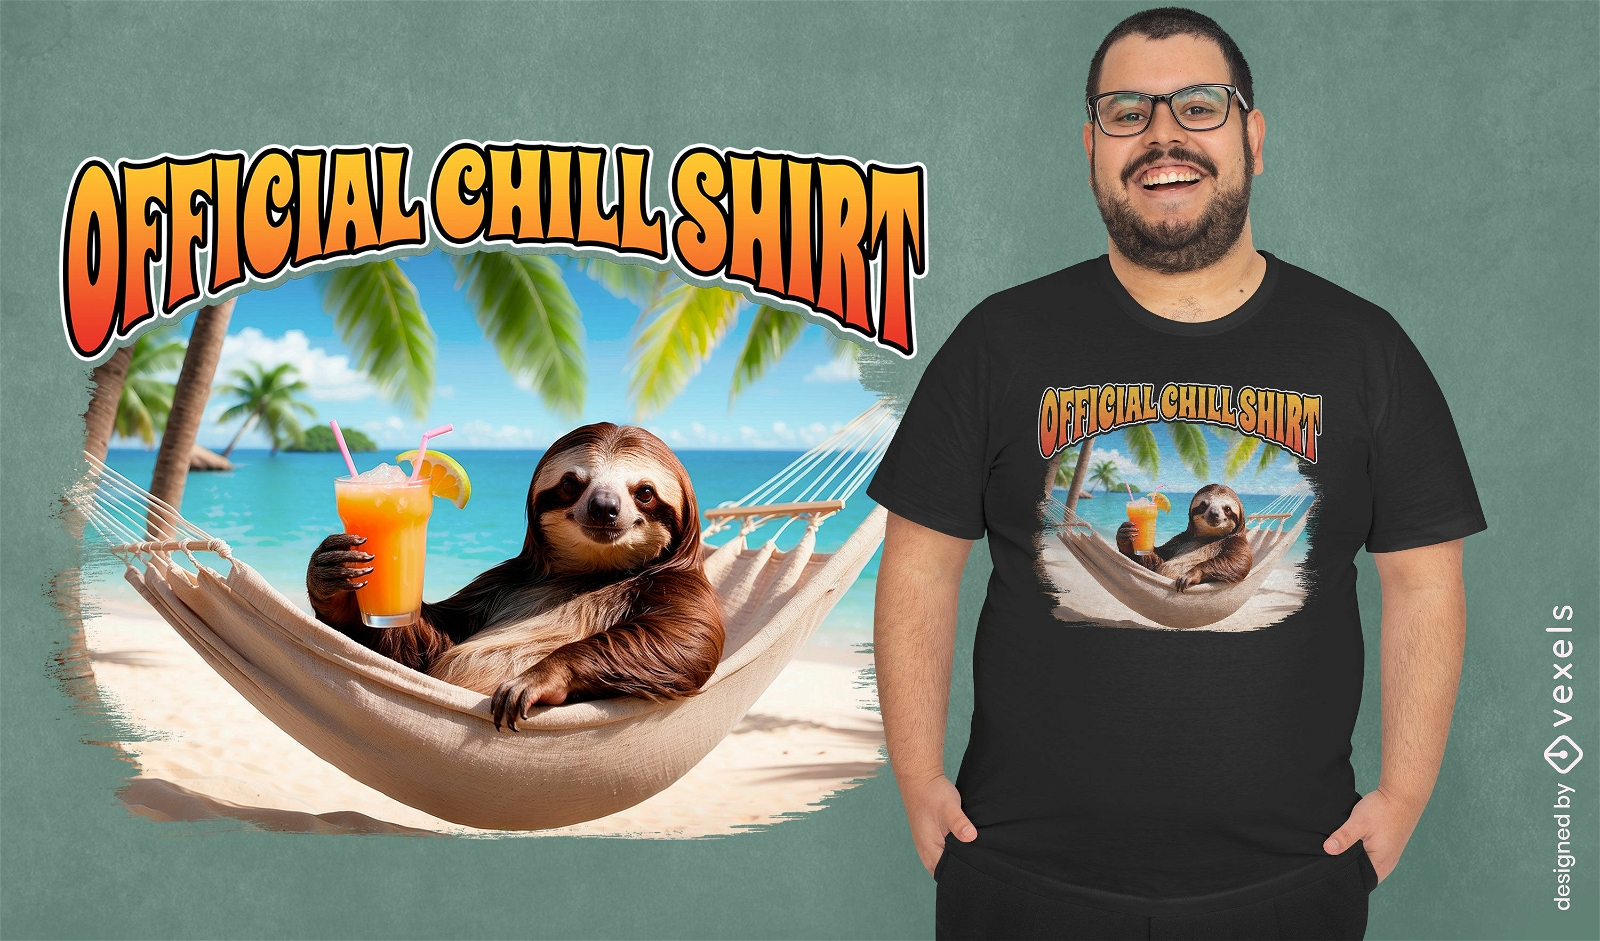 Diseño oficial de camiseta de Chill Sloth.